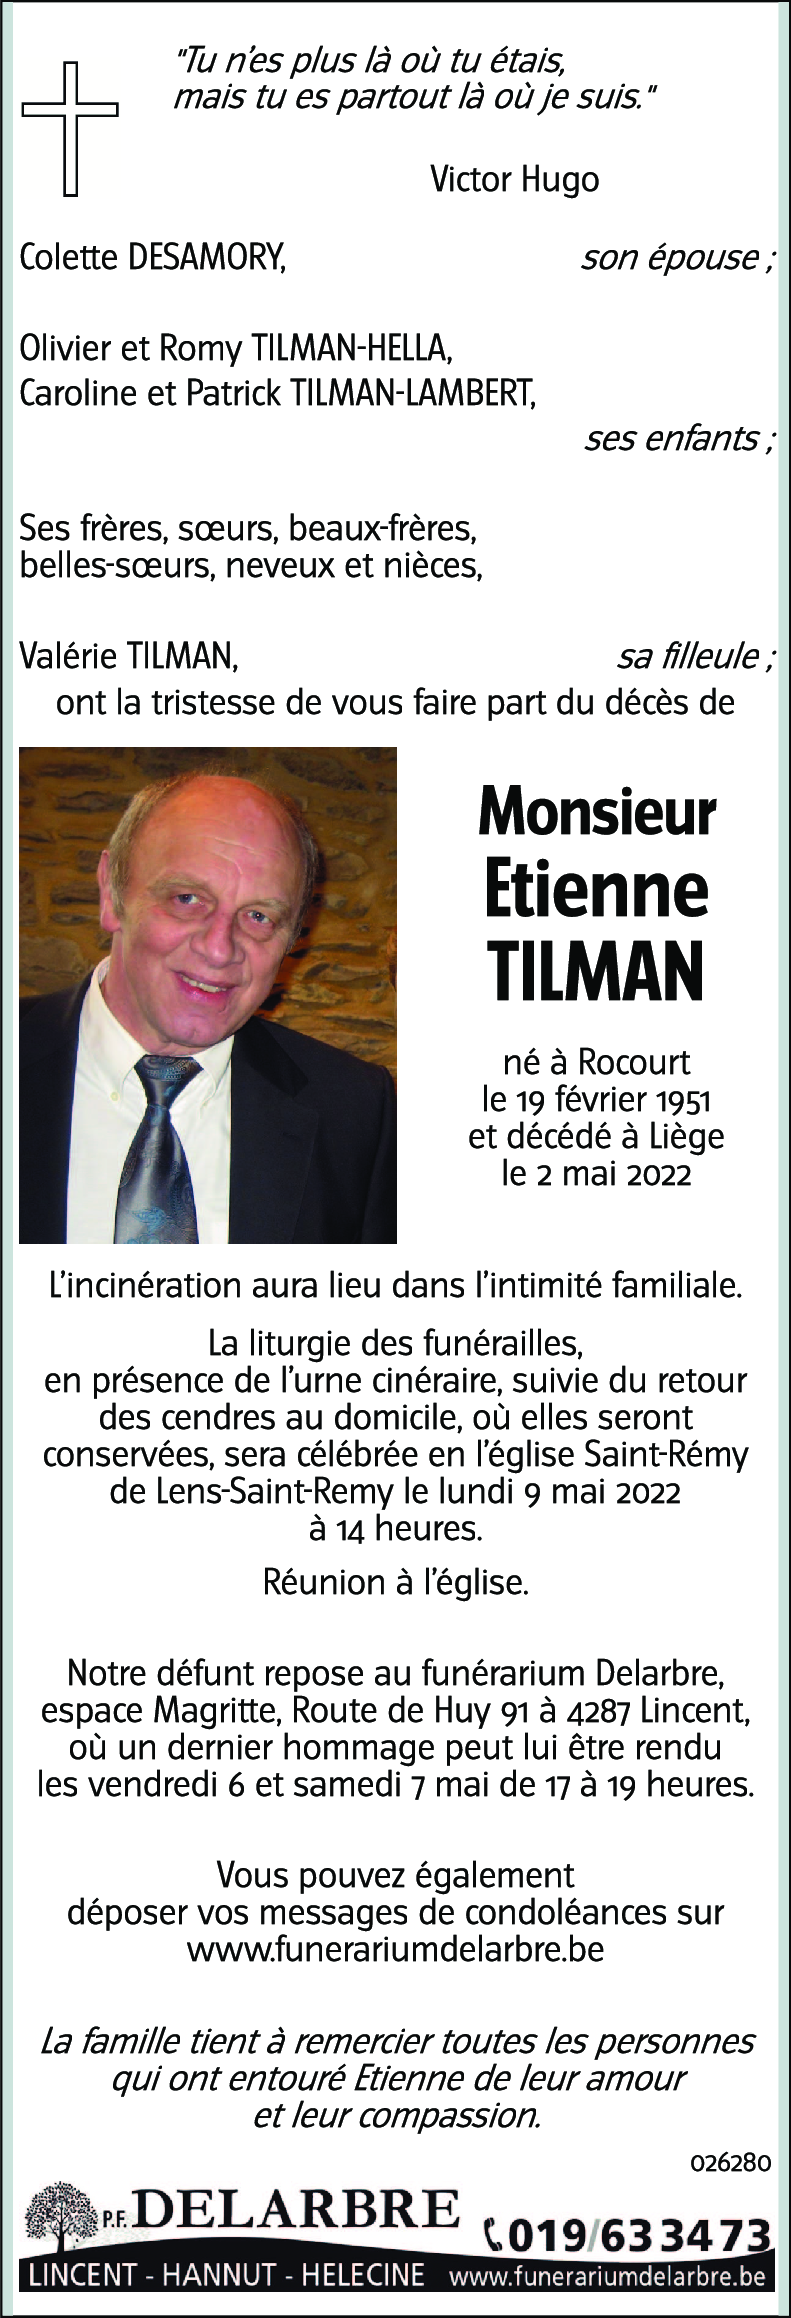 Etienne TILMAN